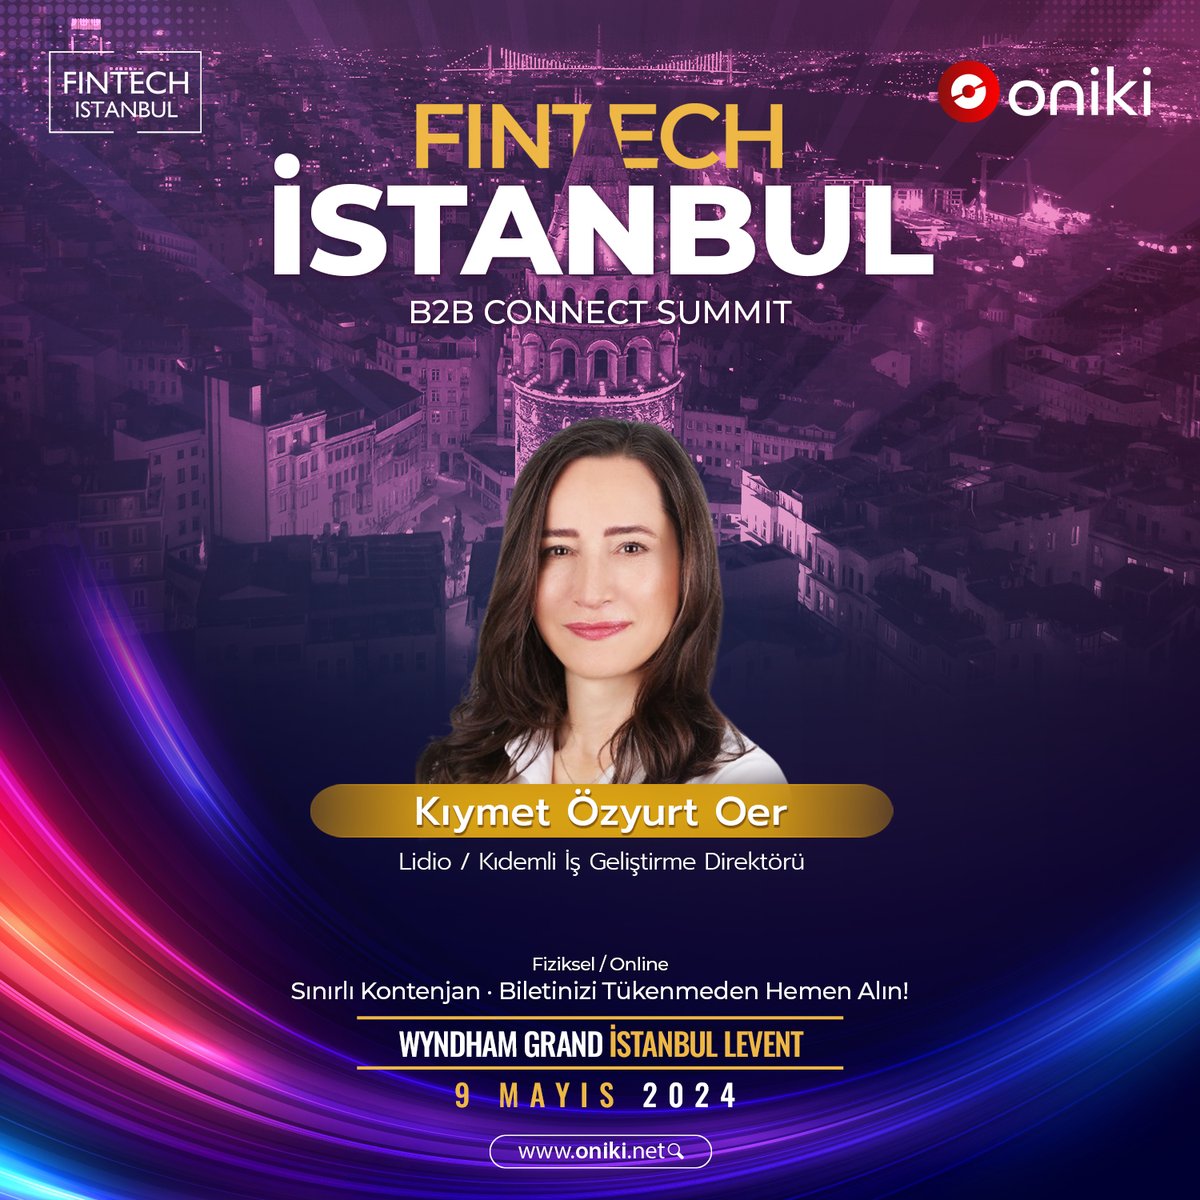 Yapay zeka destekli yeni nesil etkinlik deneyimi @oniki_net ’in @fintech_istanbul iş birliğinde 9 Mayıs’ta düzenleyeceği Fintech İstanbul B2B Connect Summit’te @LidioTR Kıdemli İş Geliştirme Direktörü Kıymet Özyurt Oer konuşmacılarımız arasında yer alacak! 🤩 #oniki #fintech